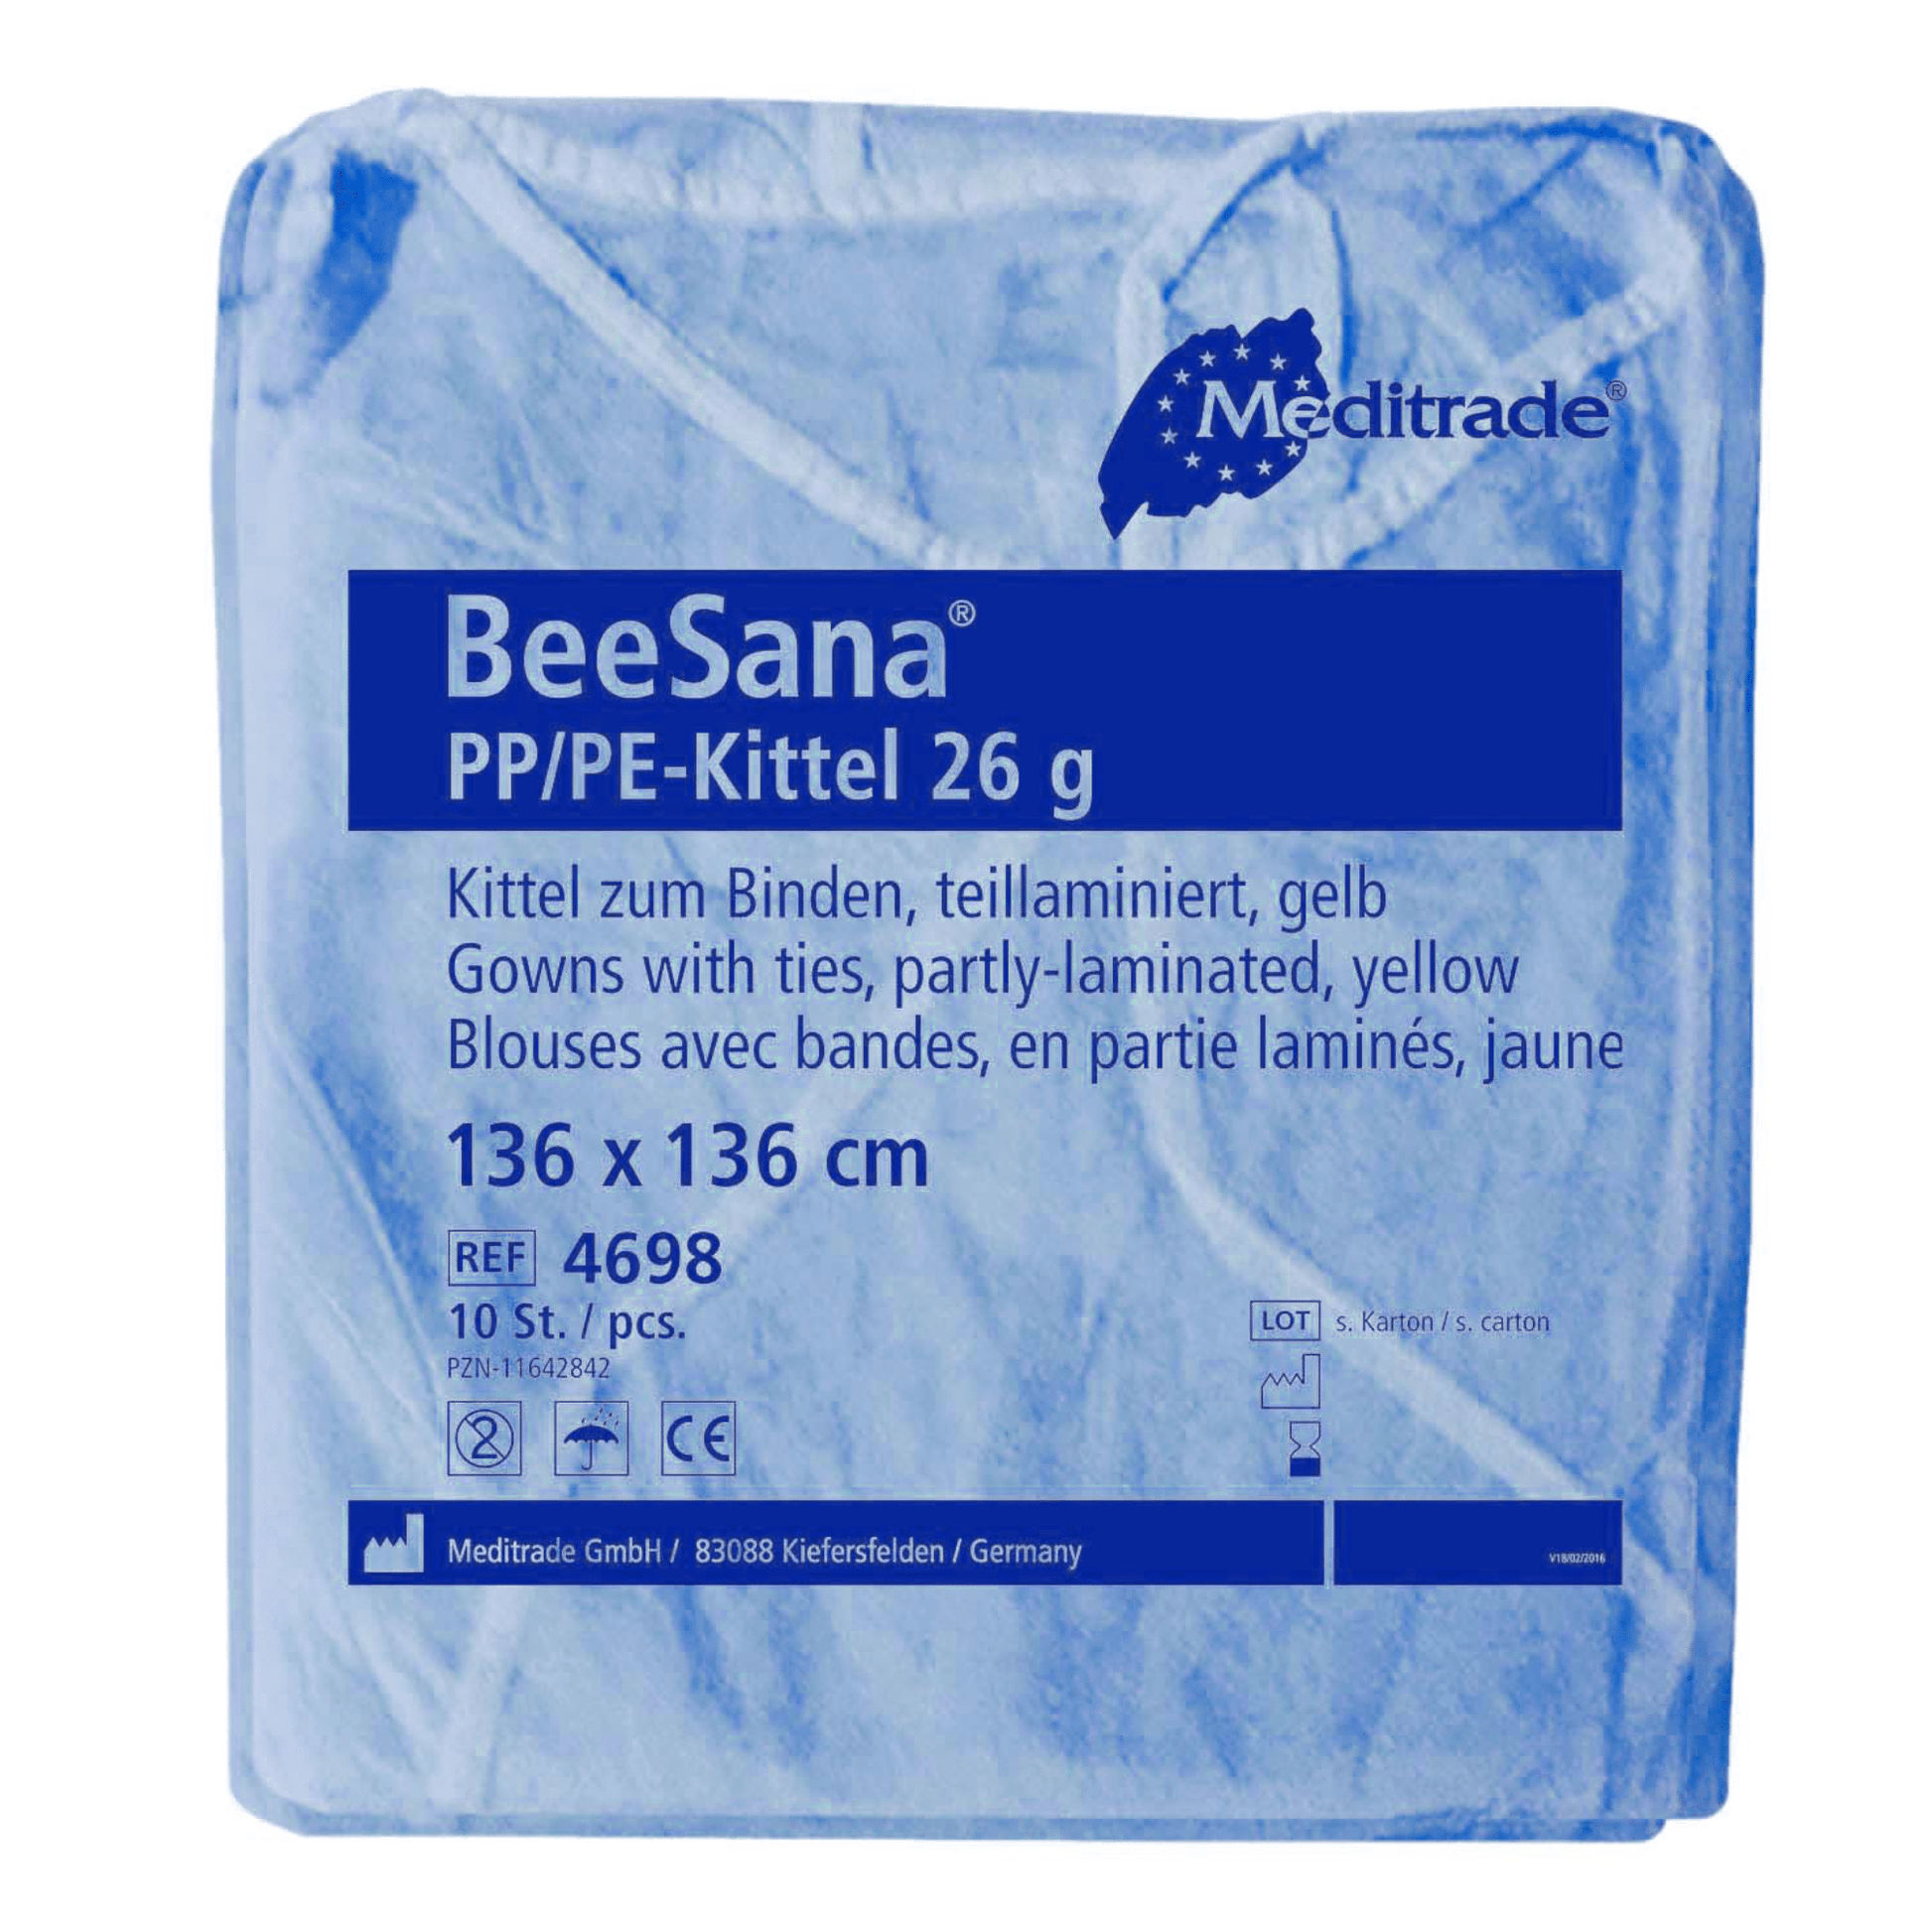 Ein blau verpackter Meditrade BeeSana® PP/PE-Kittel 26g, 10er-Packung, beschriftet mit Text, der Produktdetails wie Material, Farbe, Größe und Verpackungsmenge angibt. Dieser Kittel ist als Schutz konzipiert.